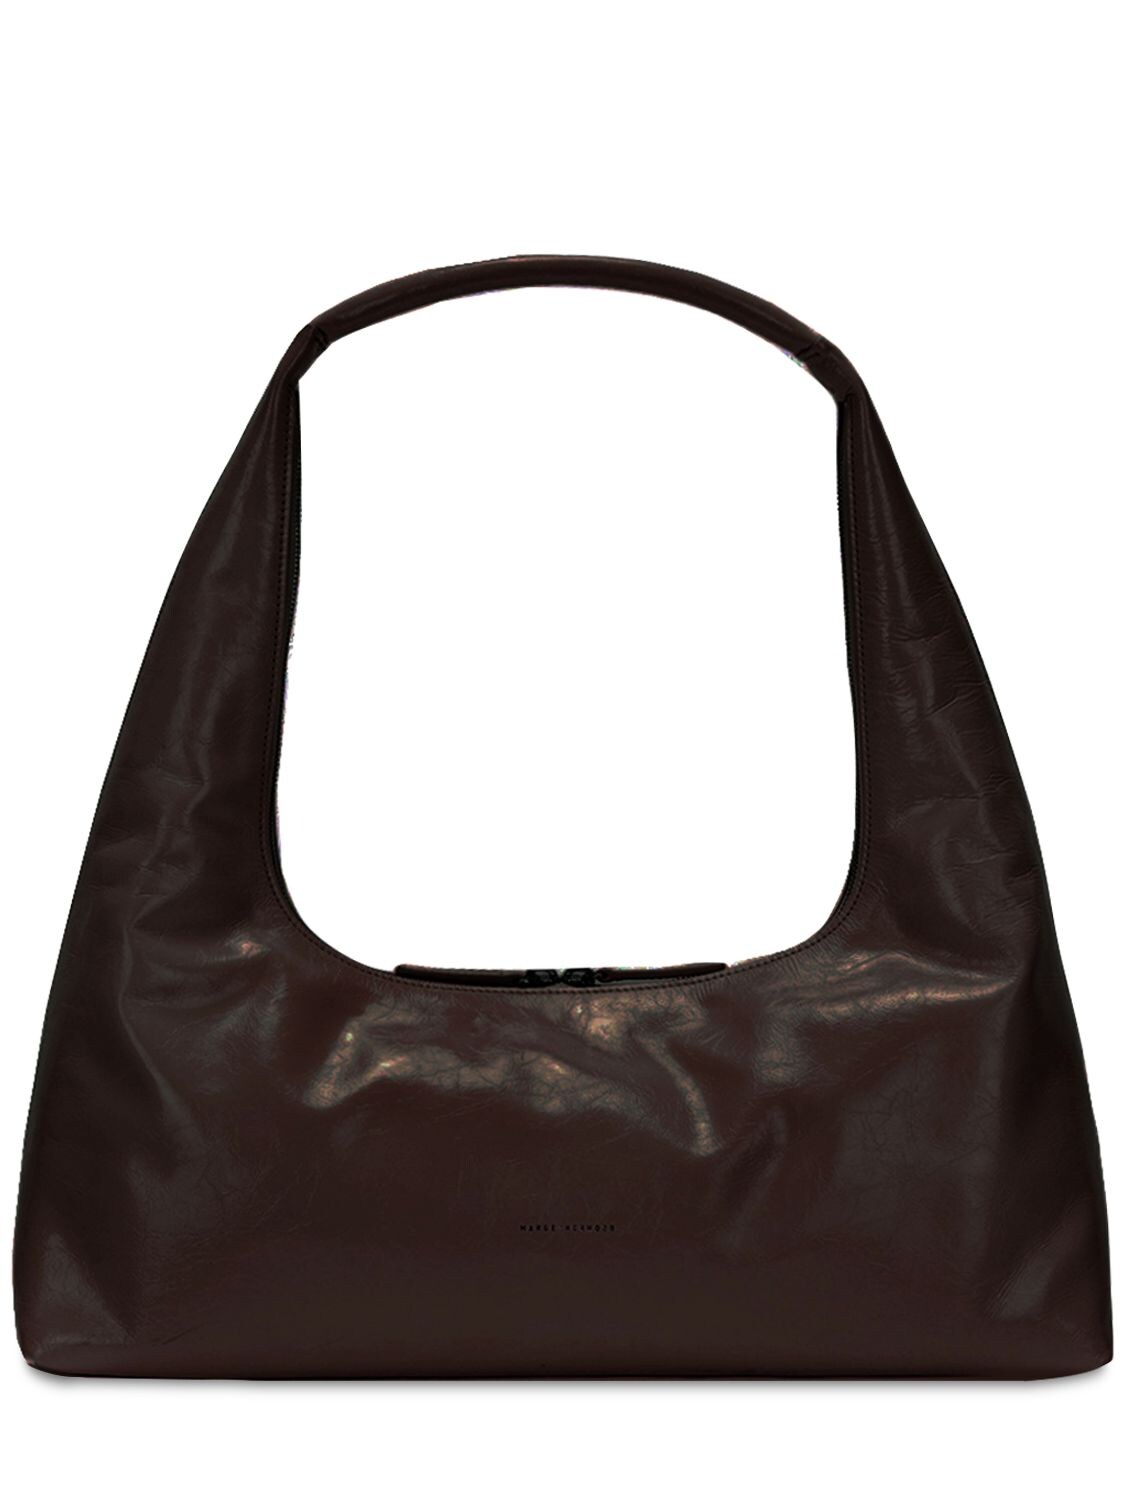 Marge Sherwood Boat Shopper Leather Shoulder Bag In Dark Brown